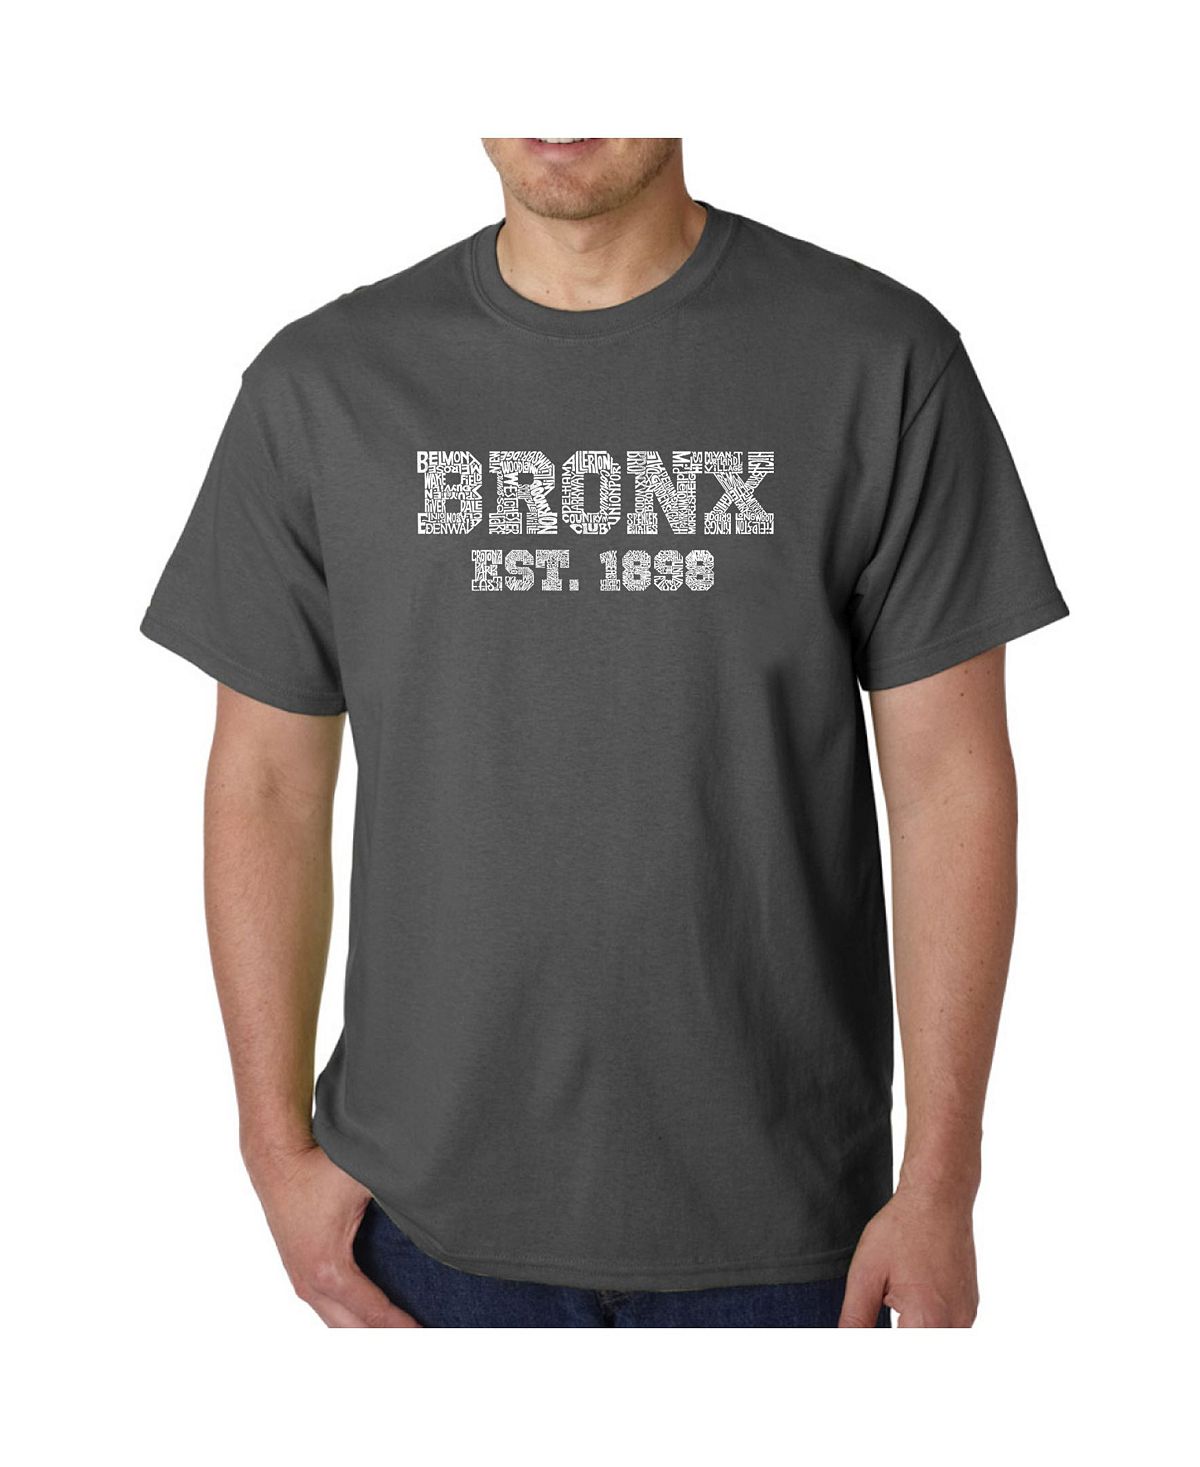 Мужская футболка word art - популярный бронкс, районы нью-йорка LA Pop Art, серый этим утром в нью йорке